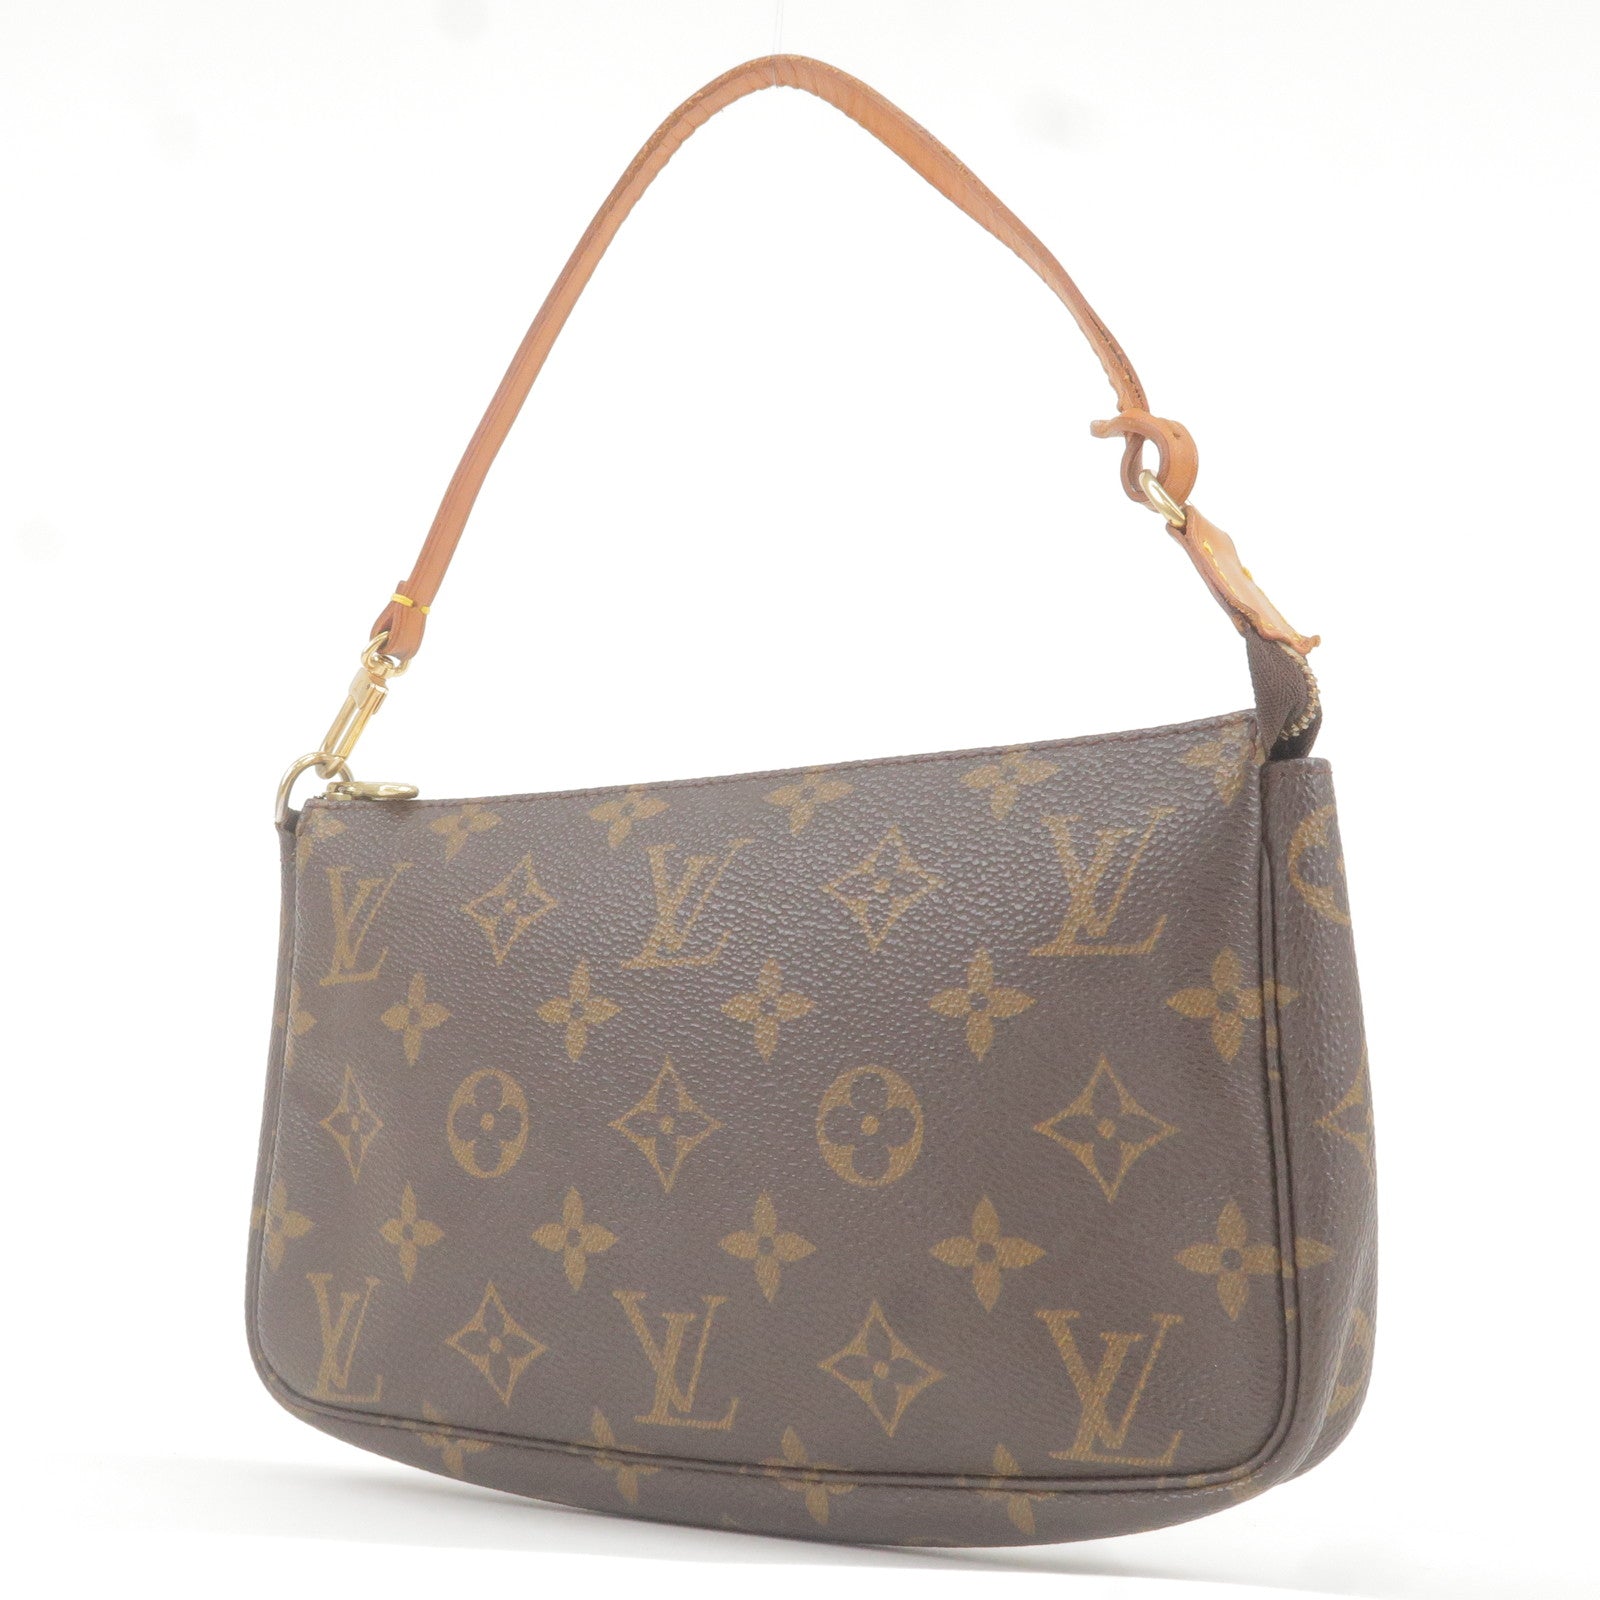 Vuitton - Bag - Hand - Pochette - M51980 – Sac de voyage Louis